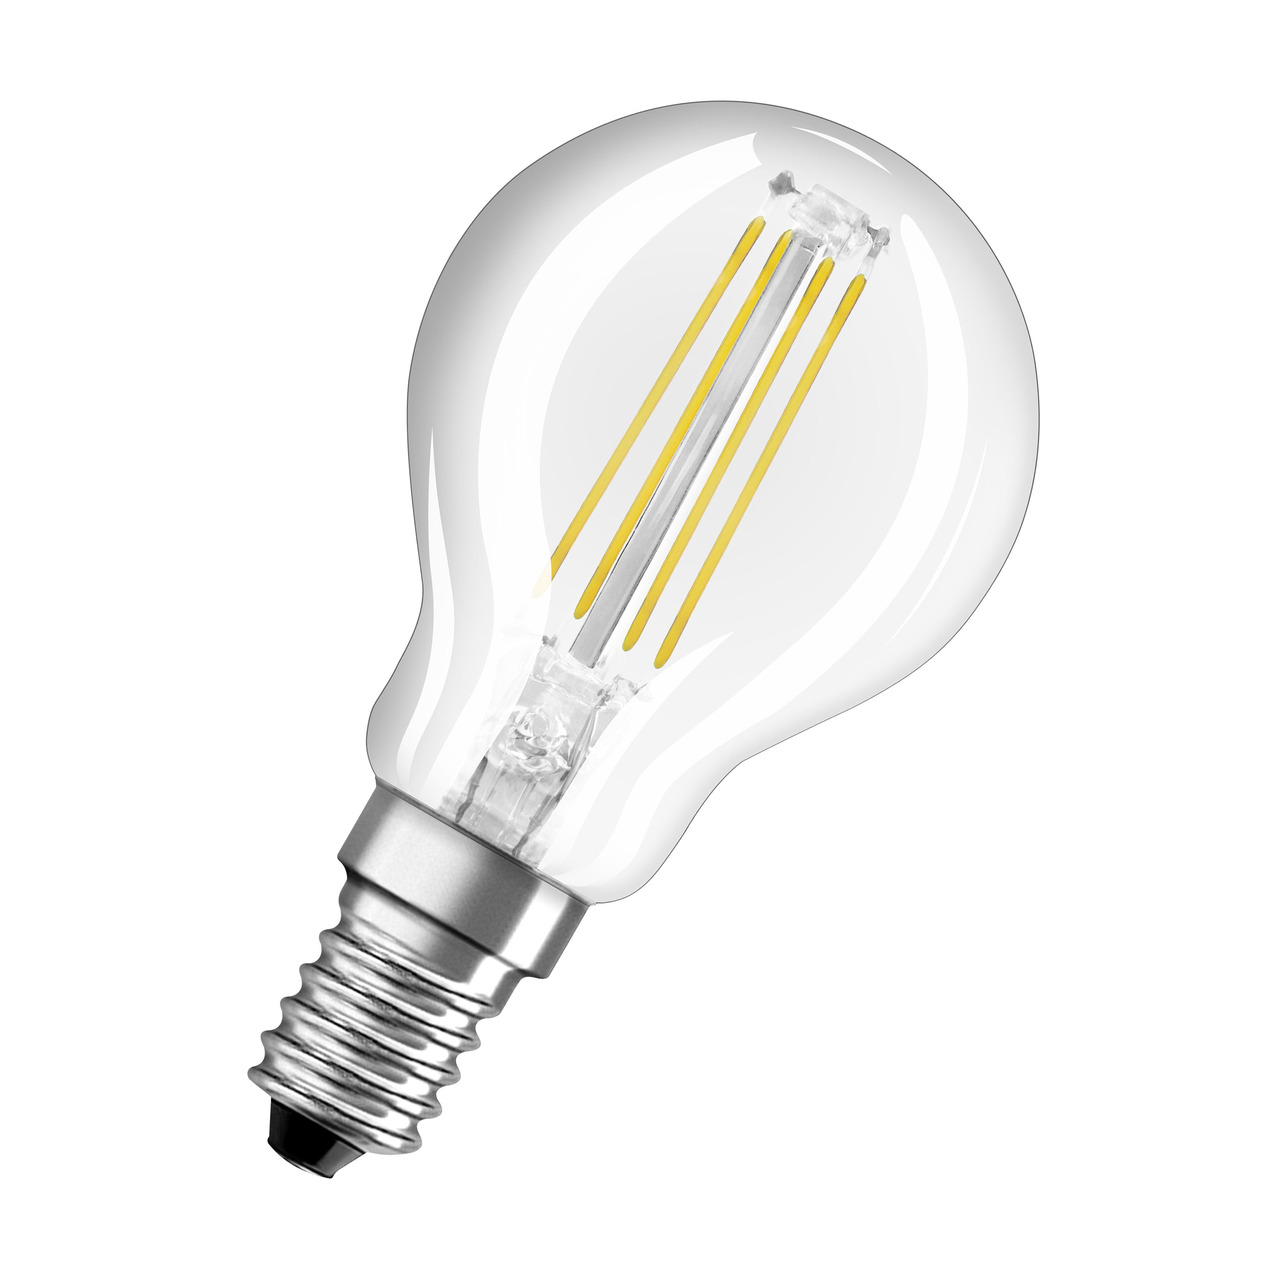 OSRAM 4-8-W-LED-Lampe P45- E14- 470 lm- neutralweiss- klar- dimmbar unter Beleuchtung